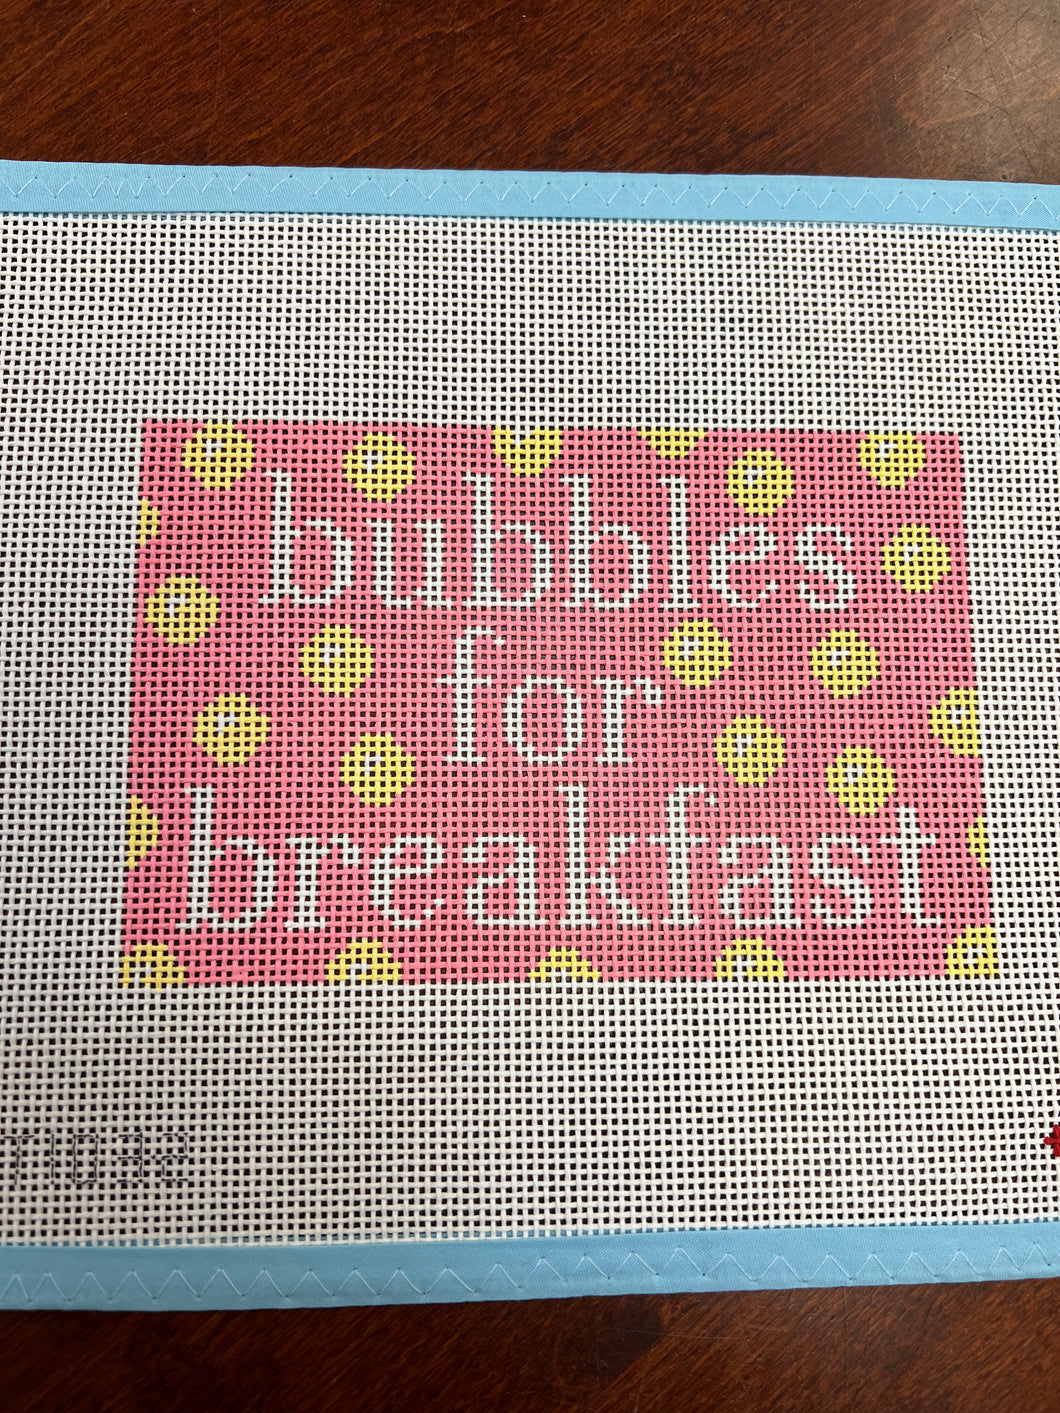 Bubbles for Breakfast